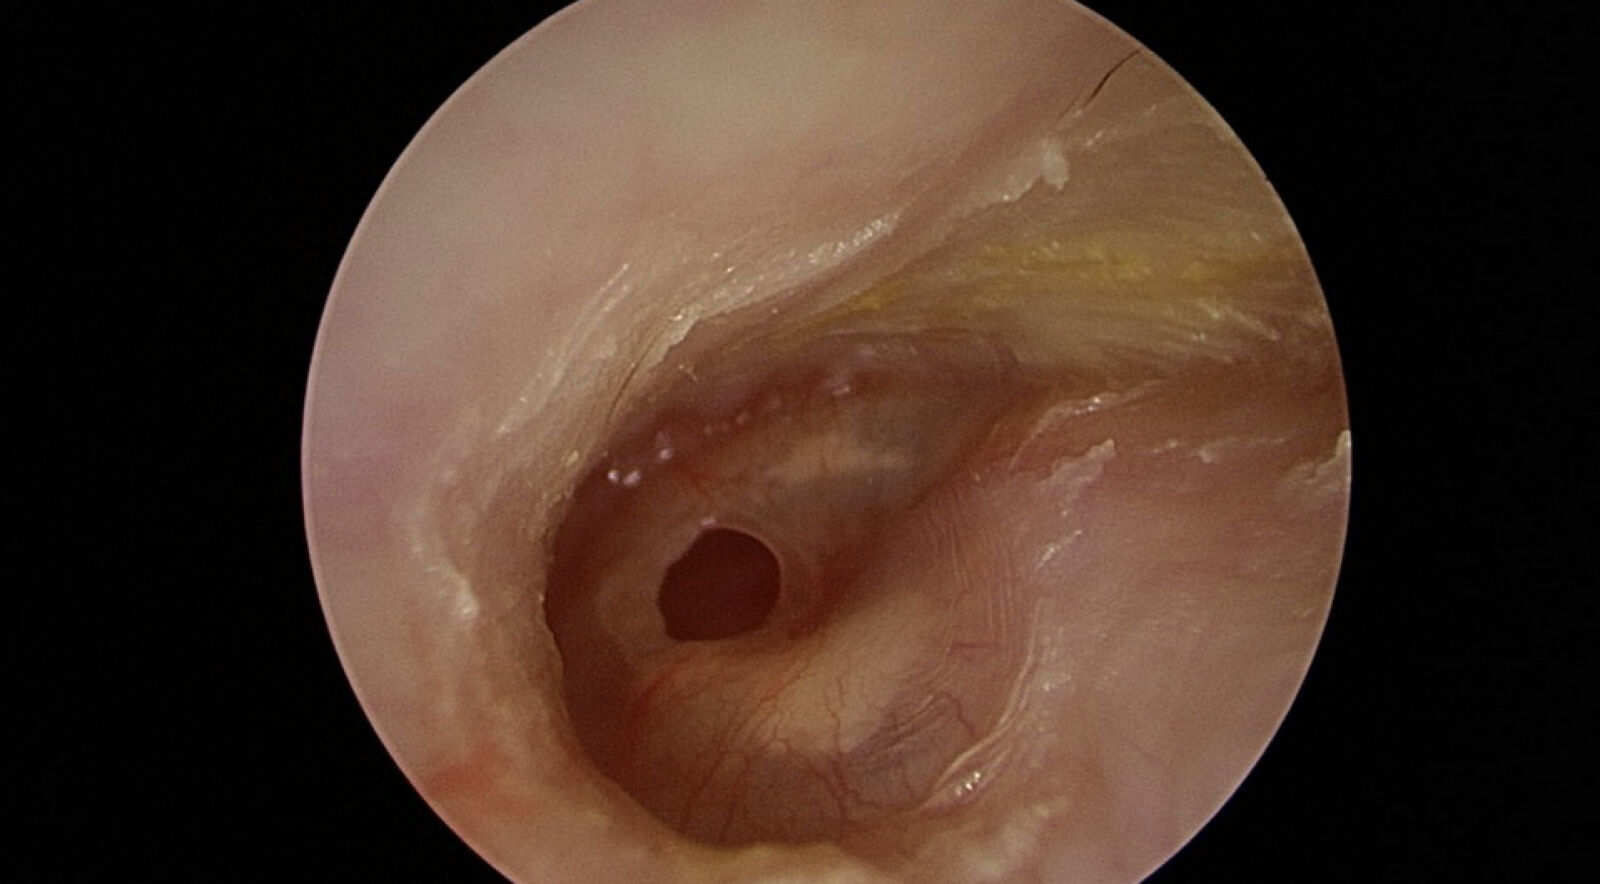 婦人接連感冒竟「聽不清、耳流湯」 醫師一看耳膜破大洞了 251